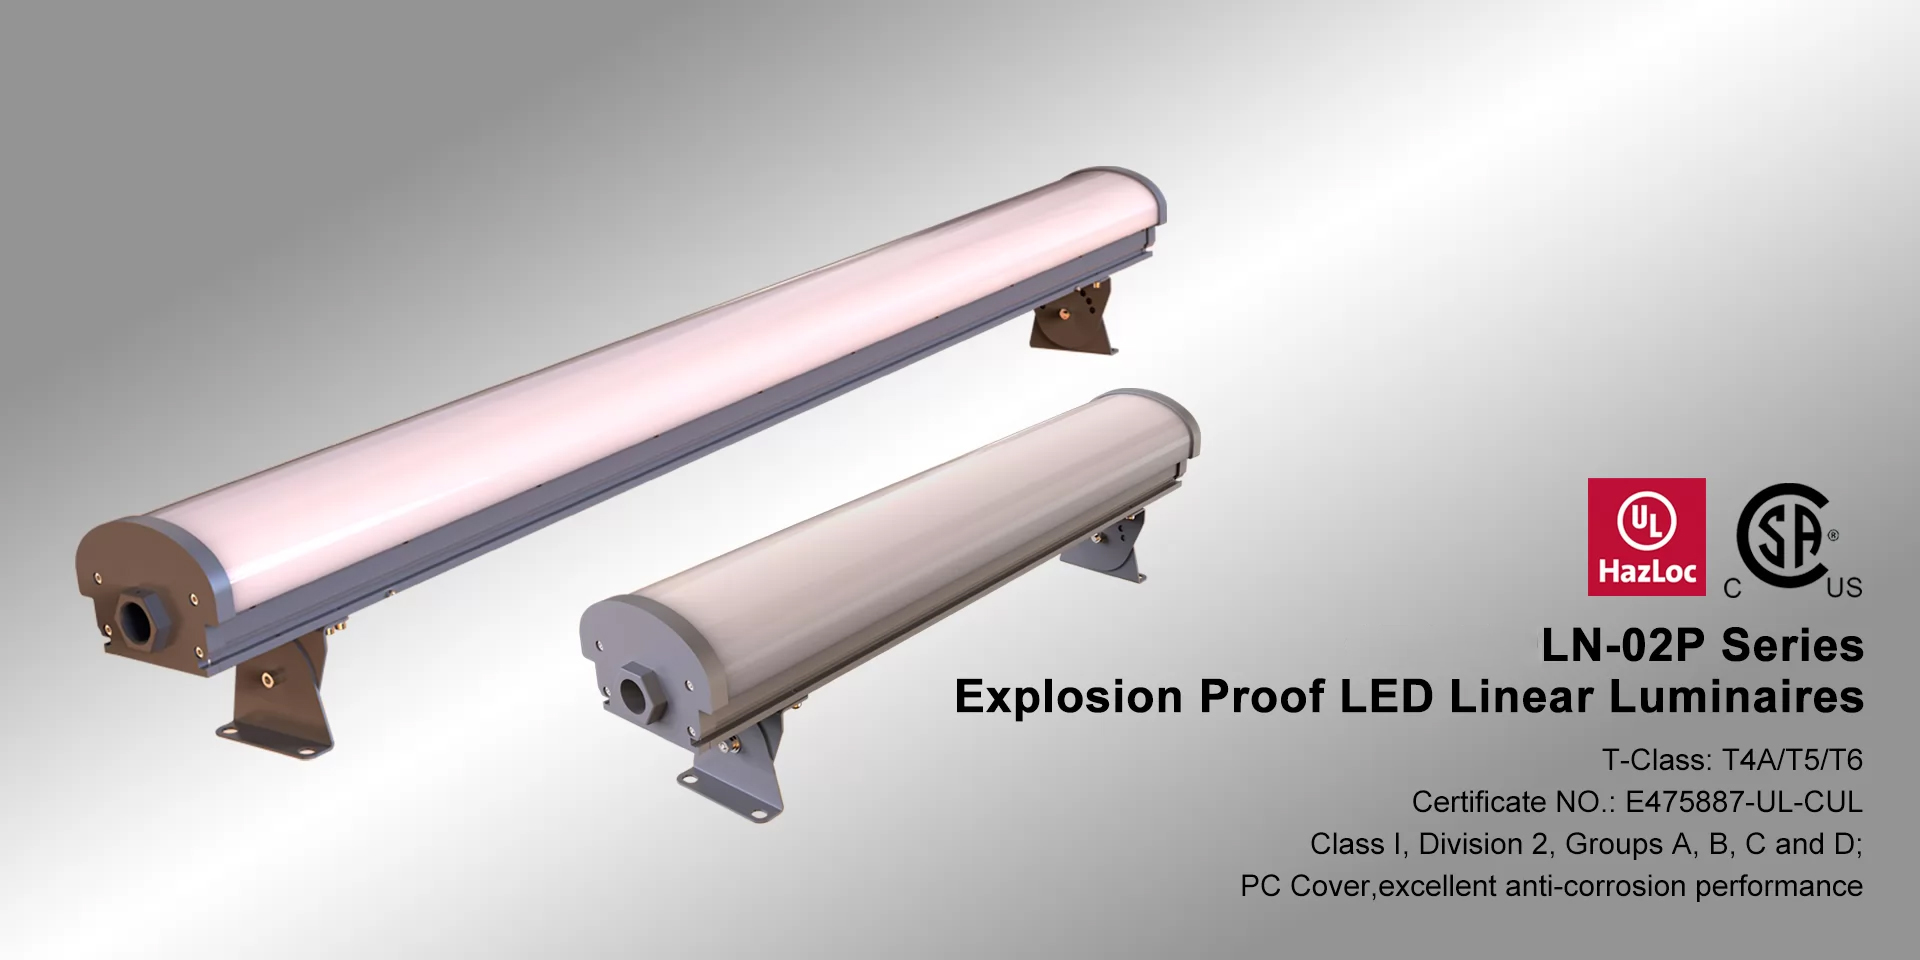 โคมไฟกันระเบิด (LED Explosion Proof) LN-02P Series